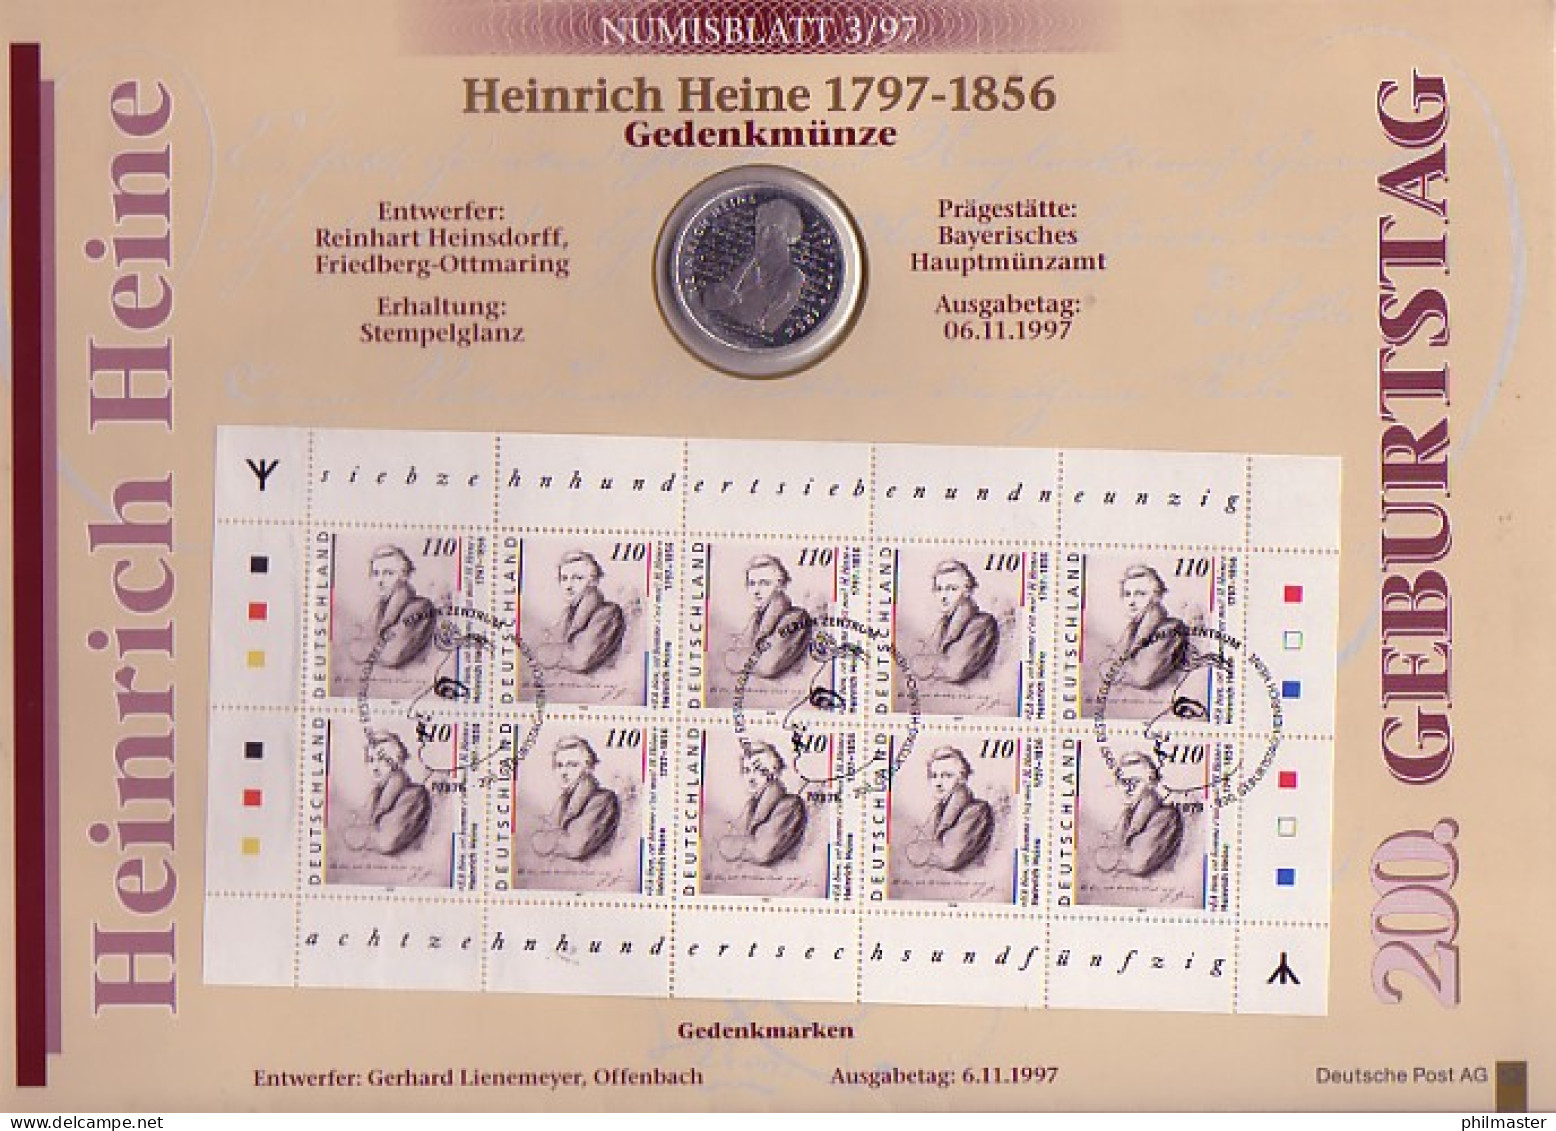 1962 Heine 1. Auflage Numisblatt 3/97 - Mit Runen, Echt Mit Stahlstempel ESSt - Numismatische Enveloppen